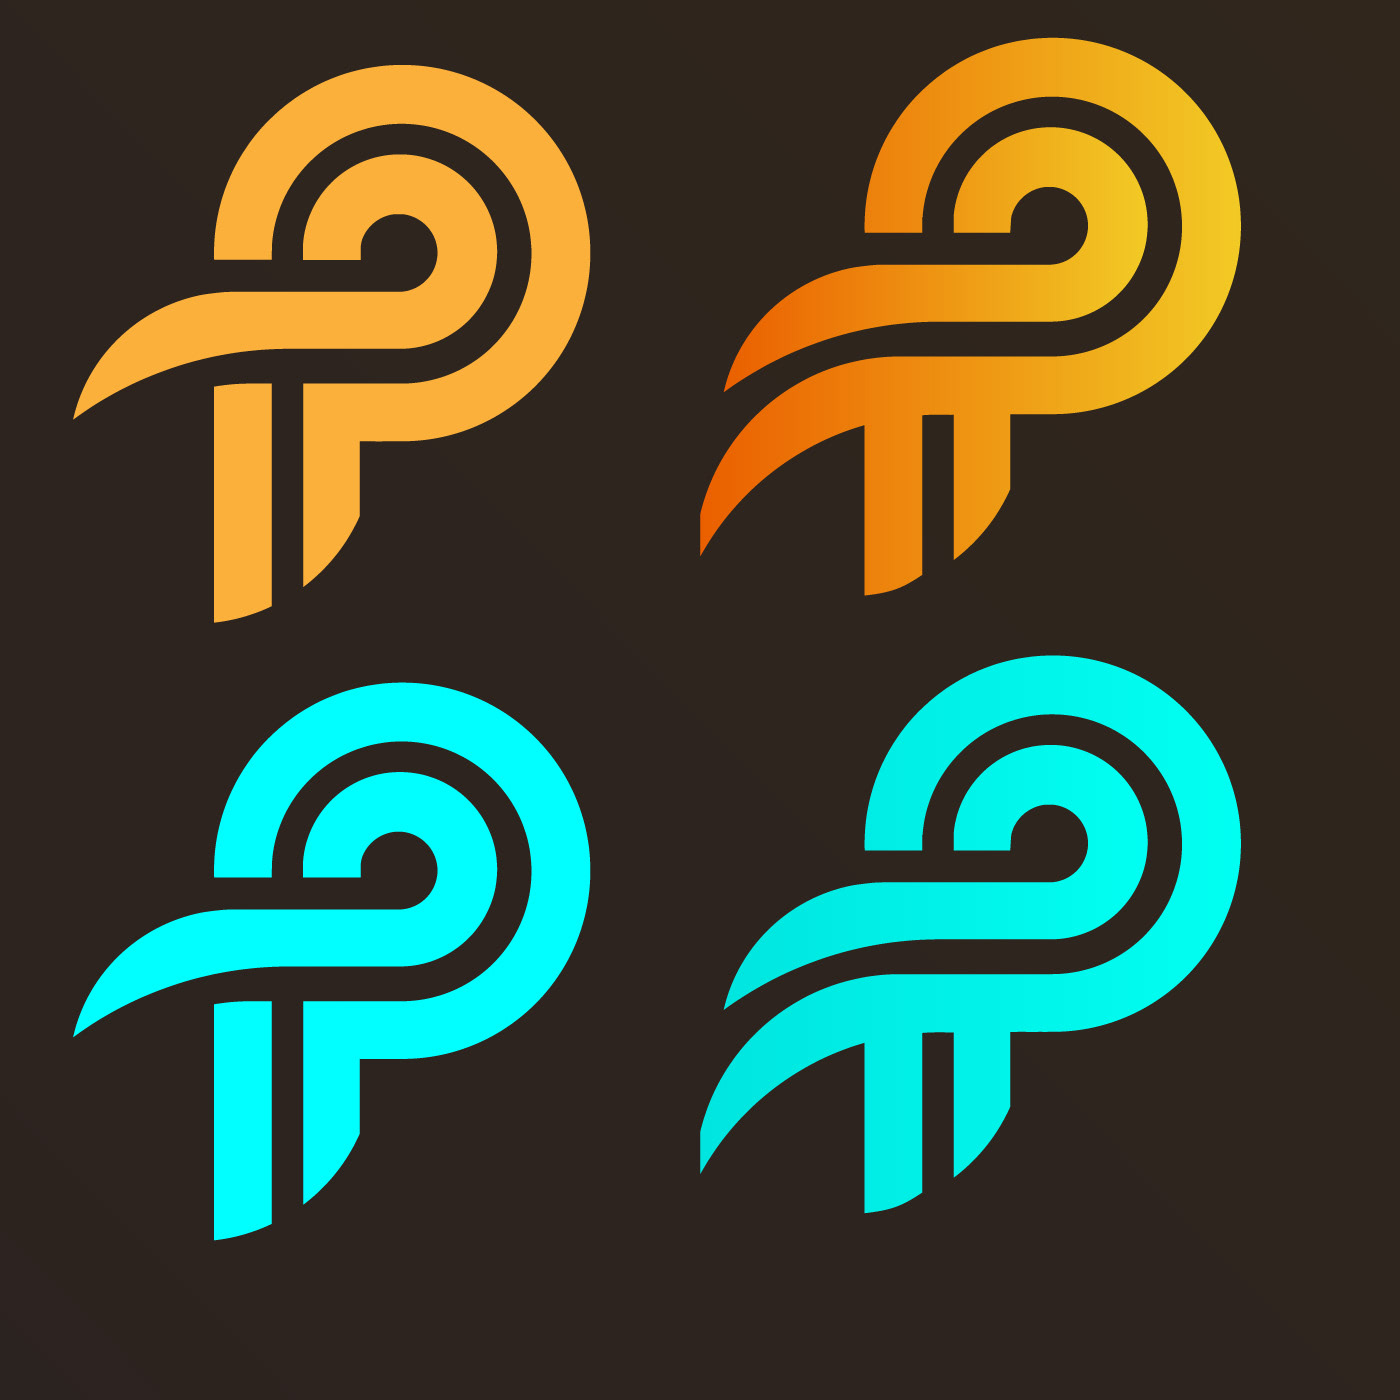 Logo Design, pp Logo Design, Letter Logo.